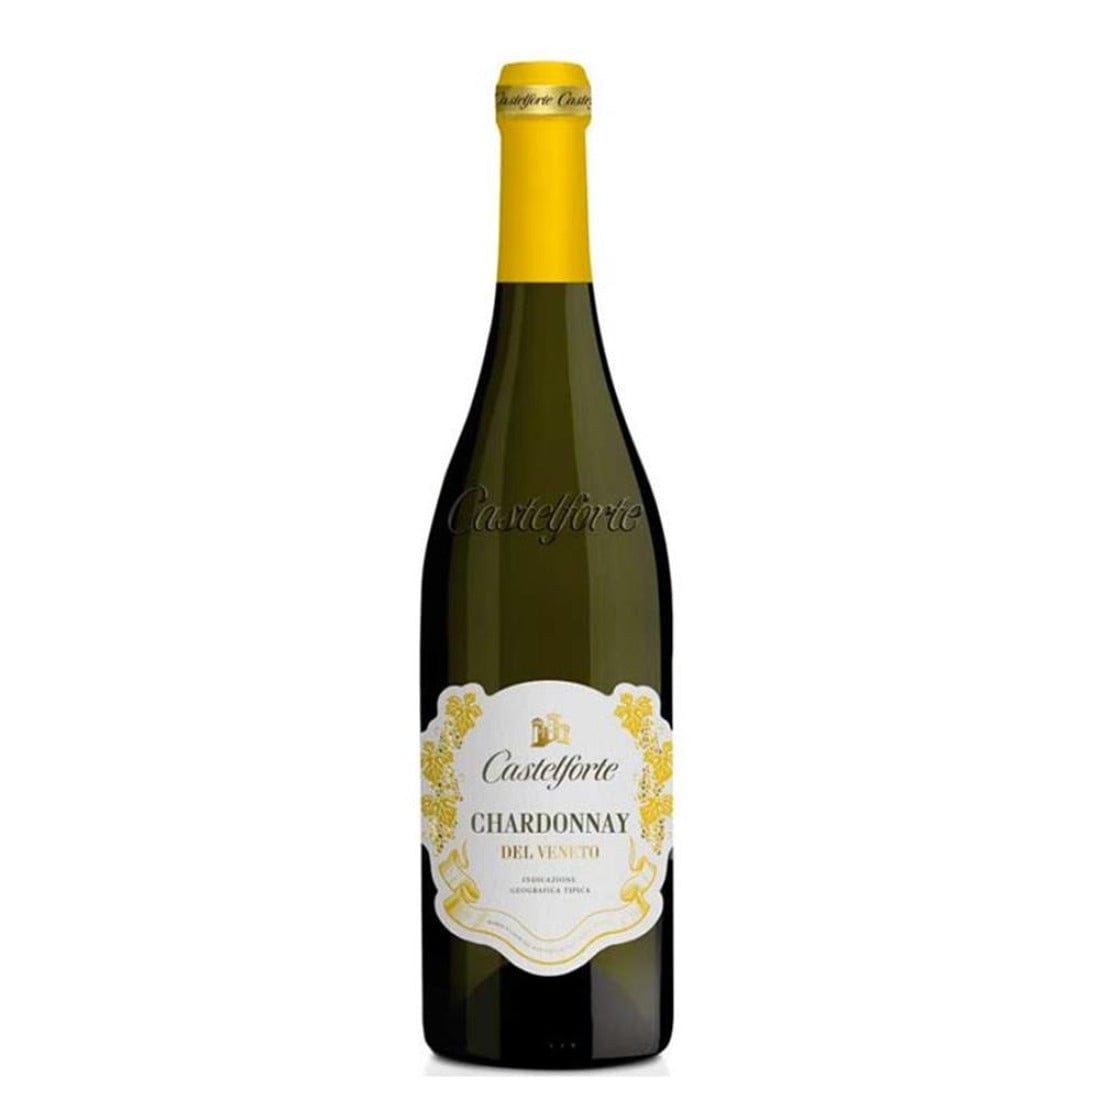 Casalforte Riondo Chardonnay 2021 Igt Veneto - Casalforte